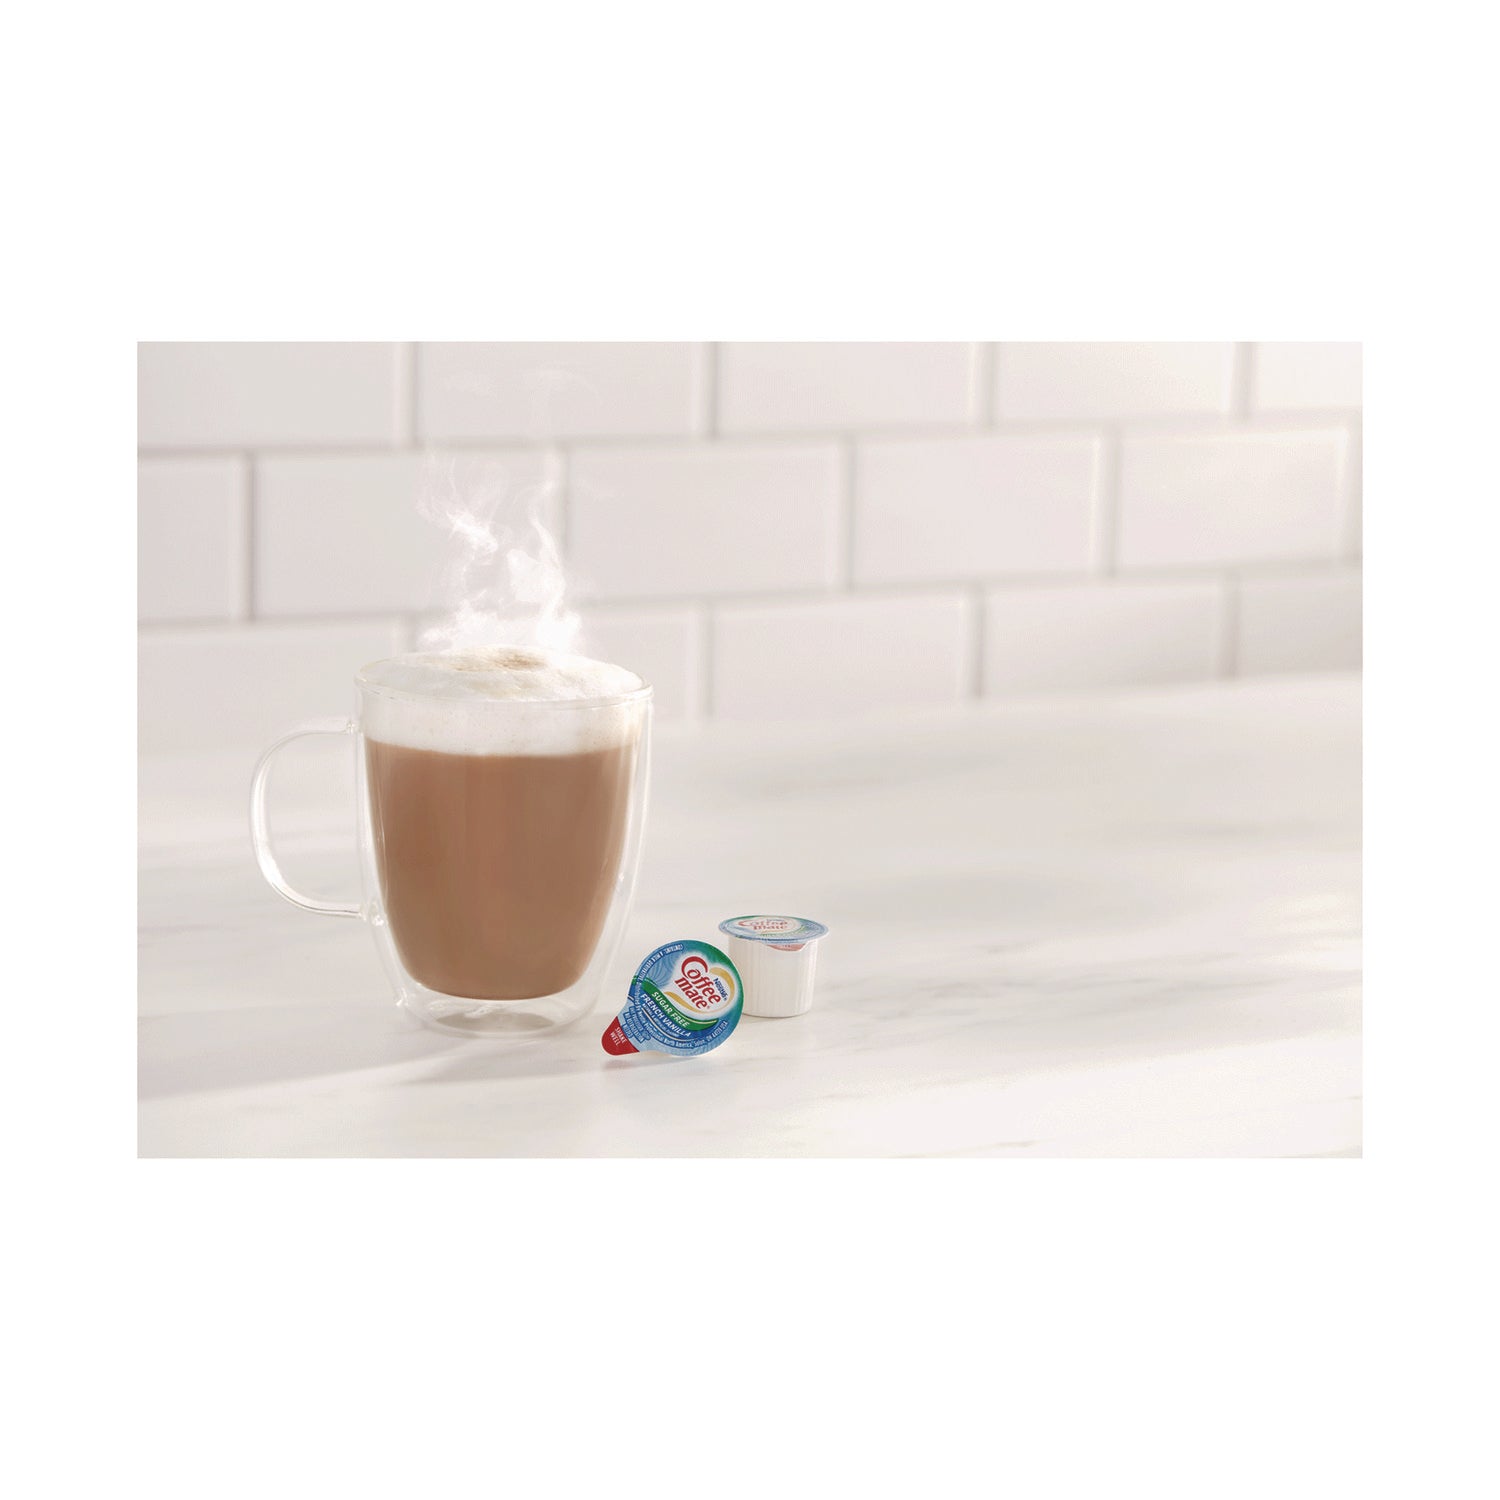 liquid-coffee-creamer-zero-sugar-french-vanilla-038-oz-mini-cups-50-box-4-boxes-carton-200-total-carton_nes91757ct - 3